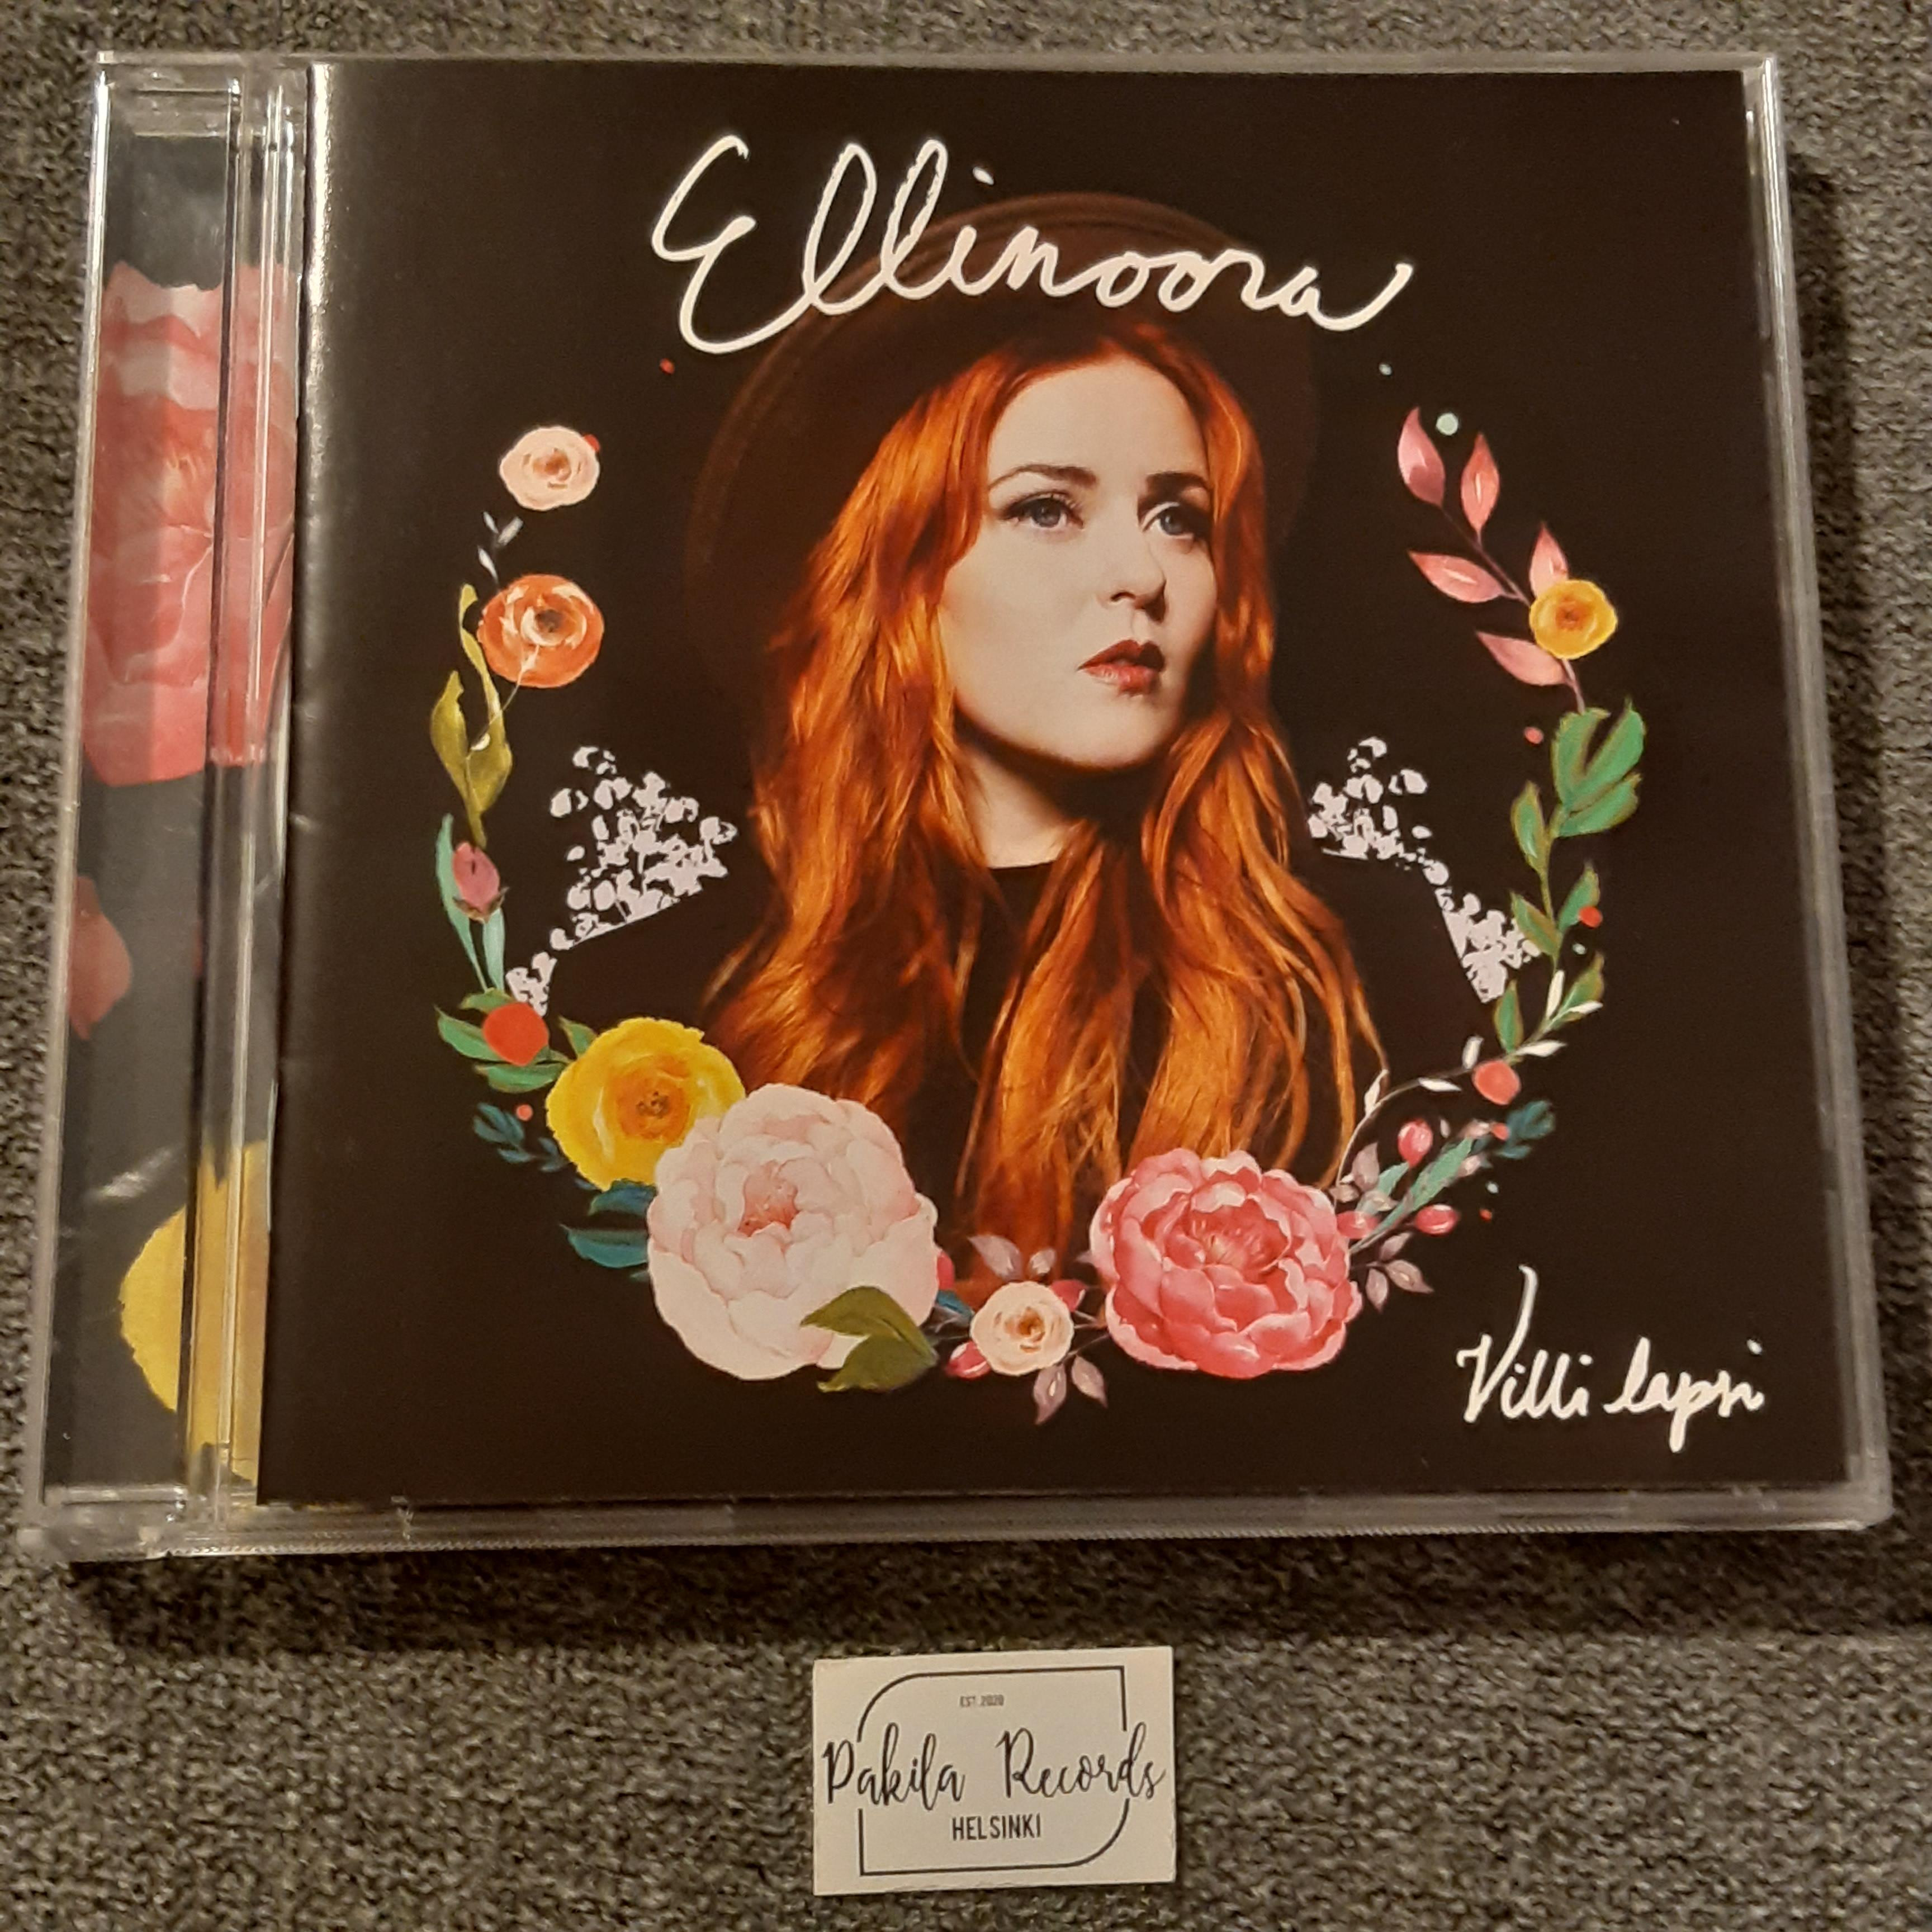 Ellinoora - Villi lapsi - CD (käytetty)